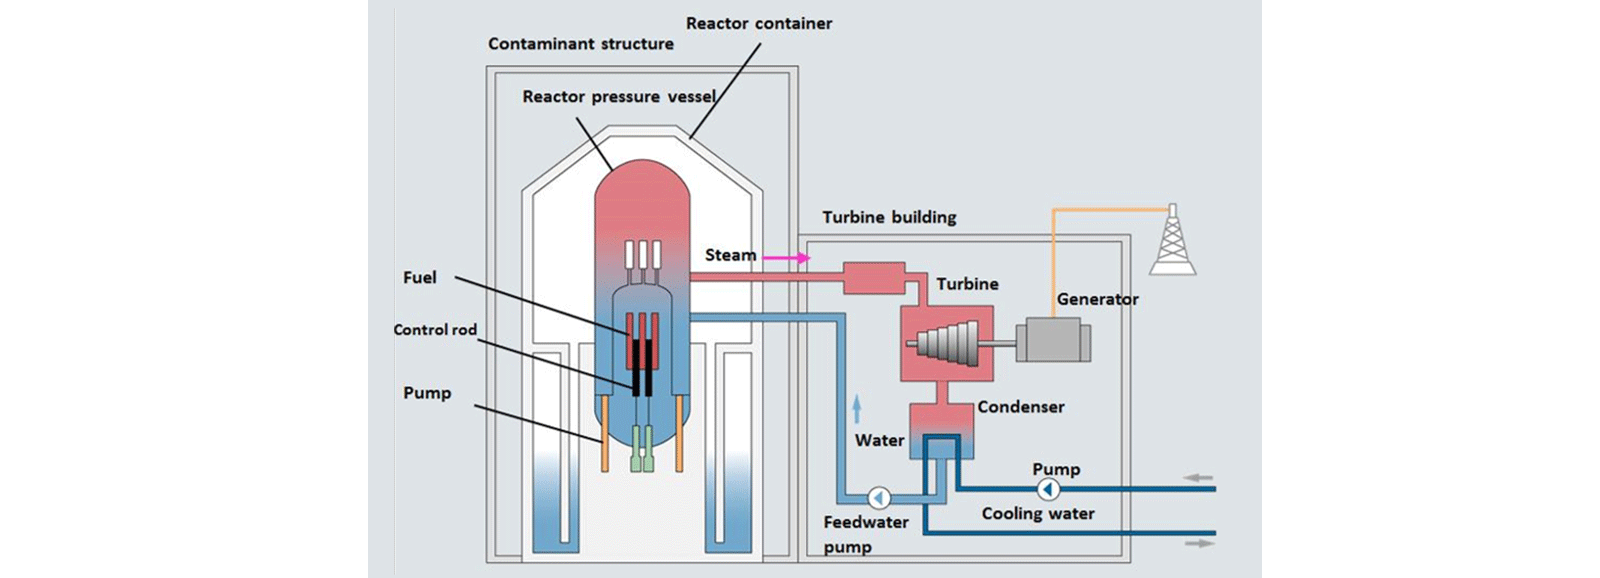 Nükleer enerji santralleri: kaynar su reaktörü (BWR)